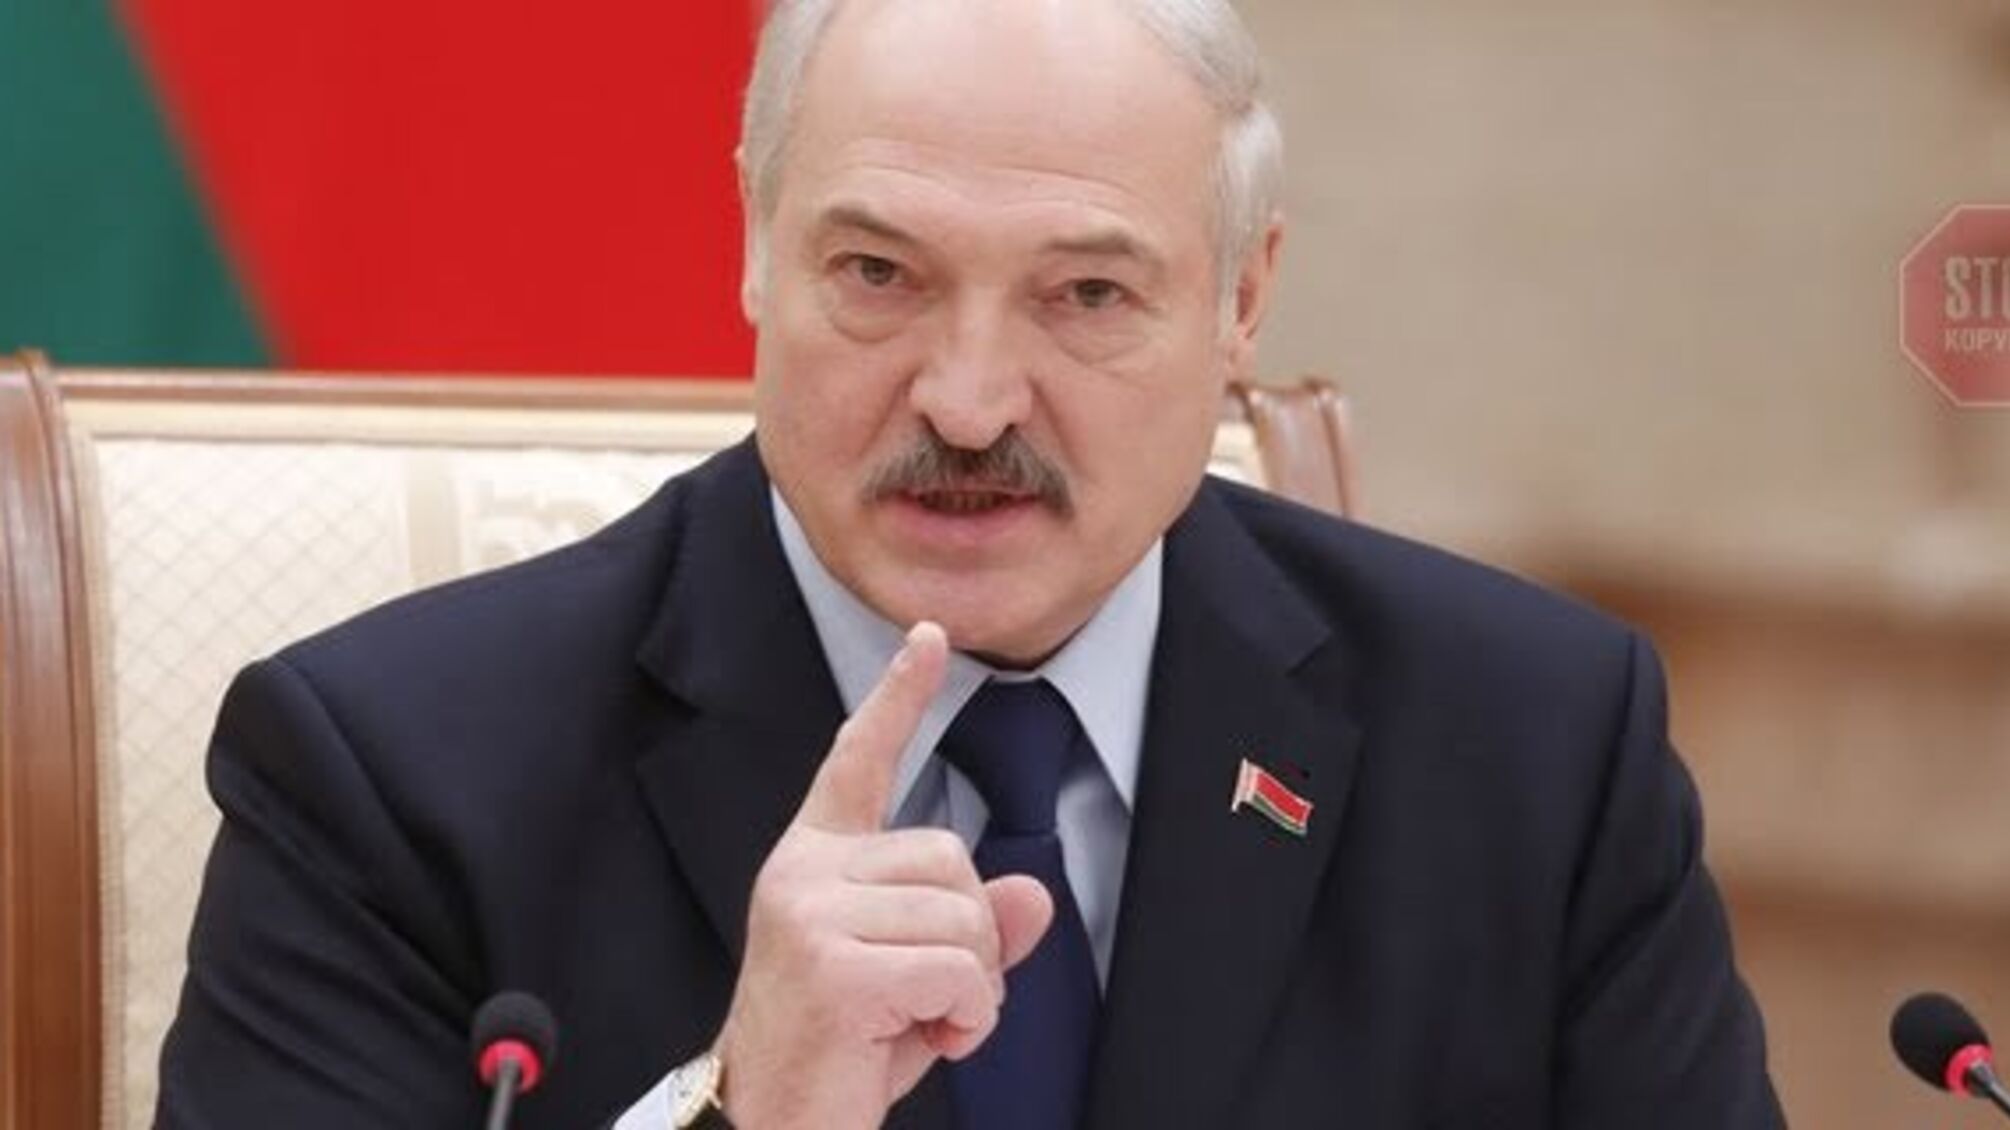 Вибори в Білорусі пройдуть без опозиції: у Лукашенка всі шанси знову стати президентом